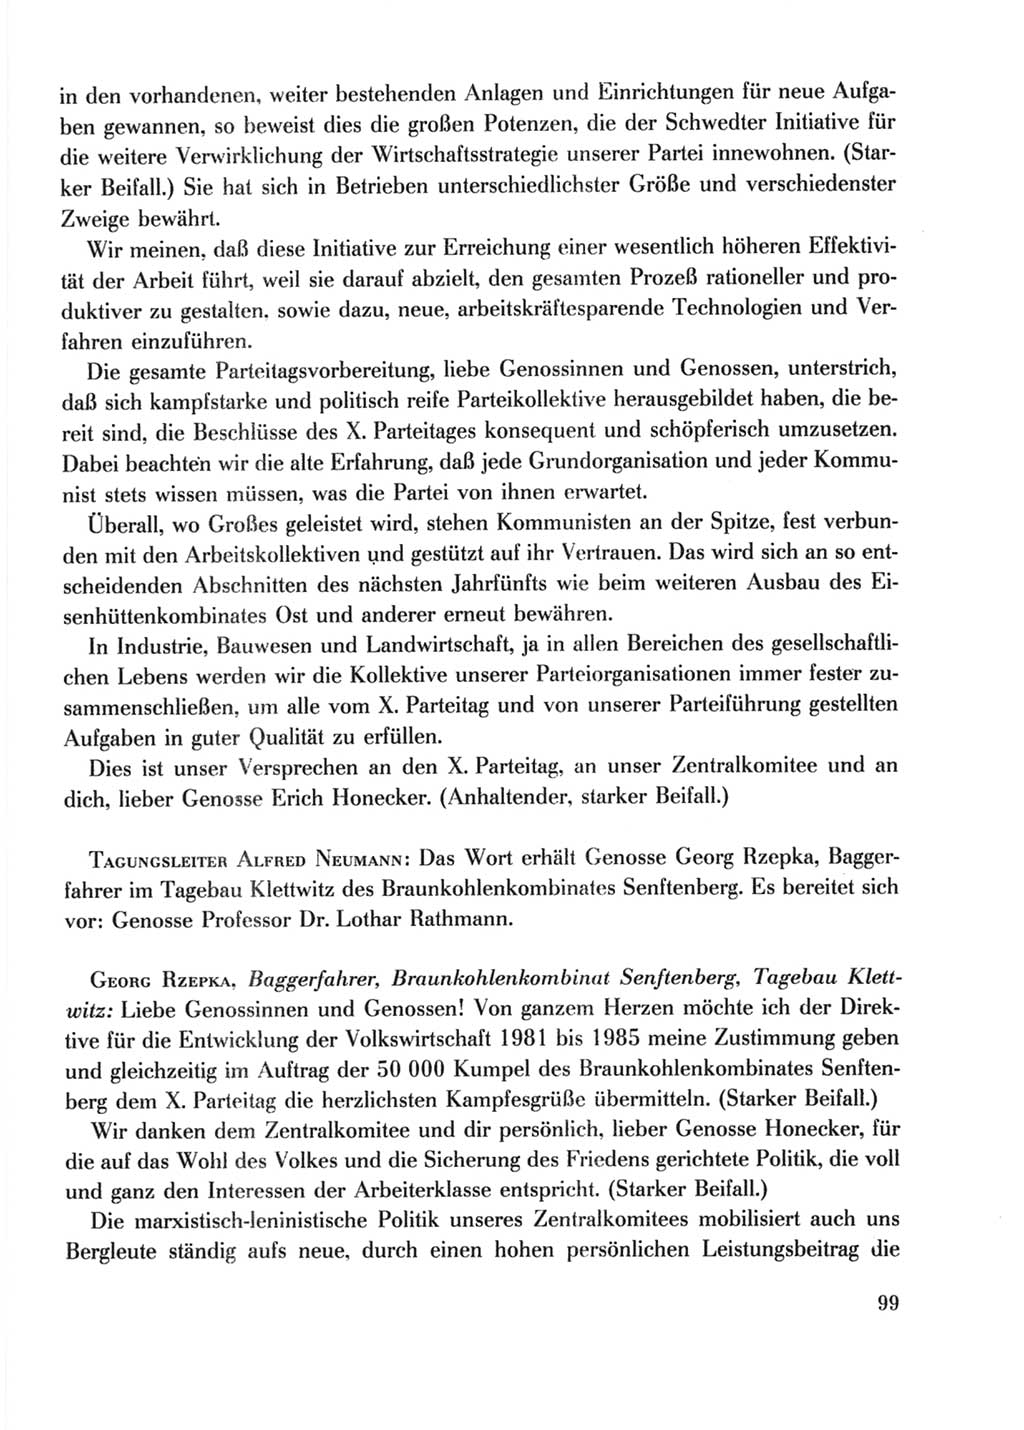 Protokoll der Verhandlungen des Ⅹ. Parteitages der Sozialistischen Einheitspartei Deutschlands (SED) [Deutsche Demokratische Republik (DDR)] 1981, Band 2, Seite 99 (Prot. Verh. Ⅹ. PT SED DDR 1981, Bd. 2, S. 99)